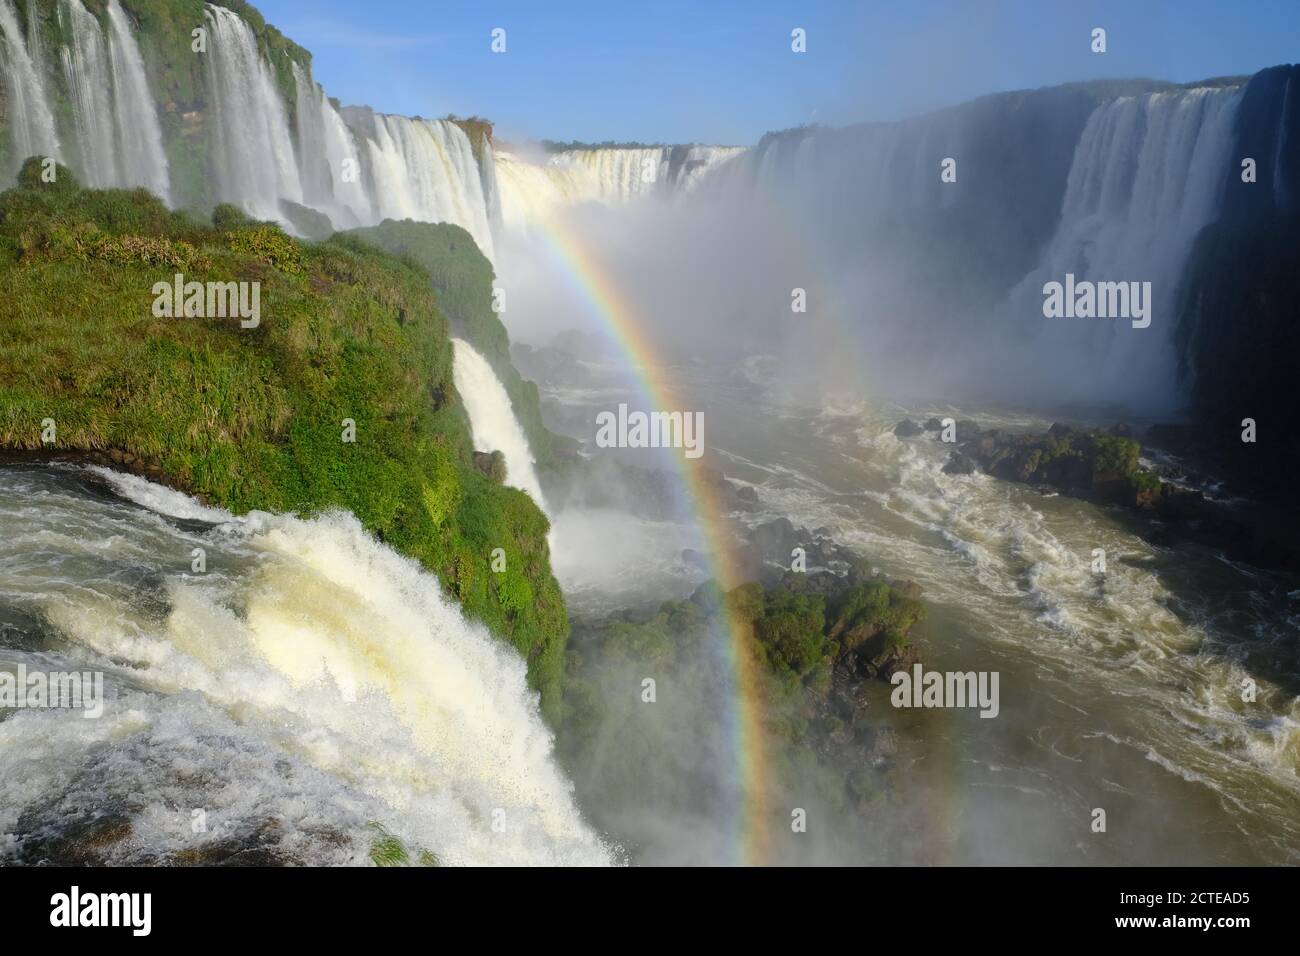 Brazil Foz do Iguacu - Iguazu Waterfall - Las Cataratas del Iguazu with rainbows Stock Photo